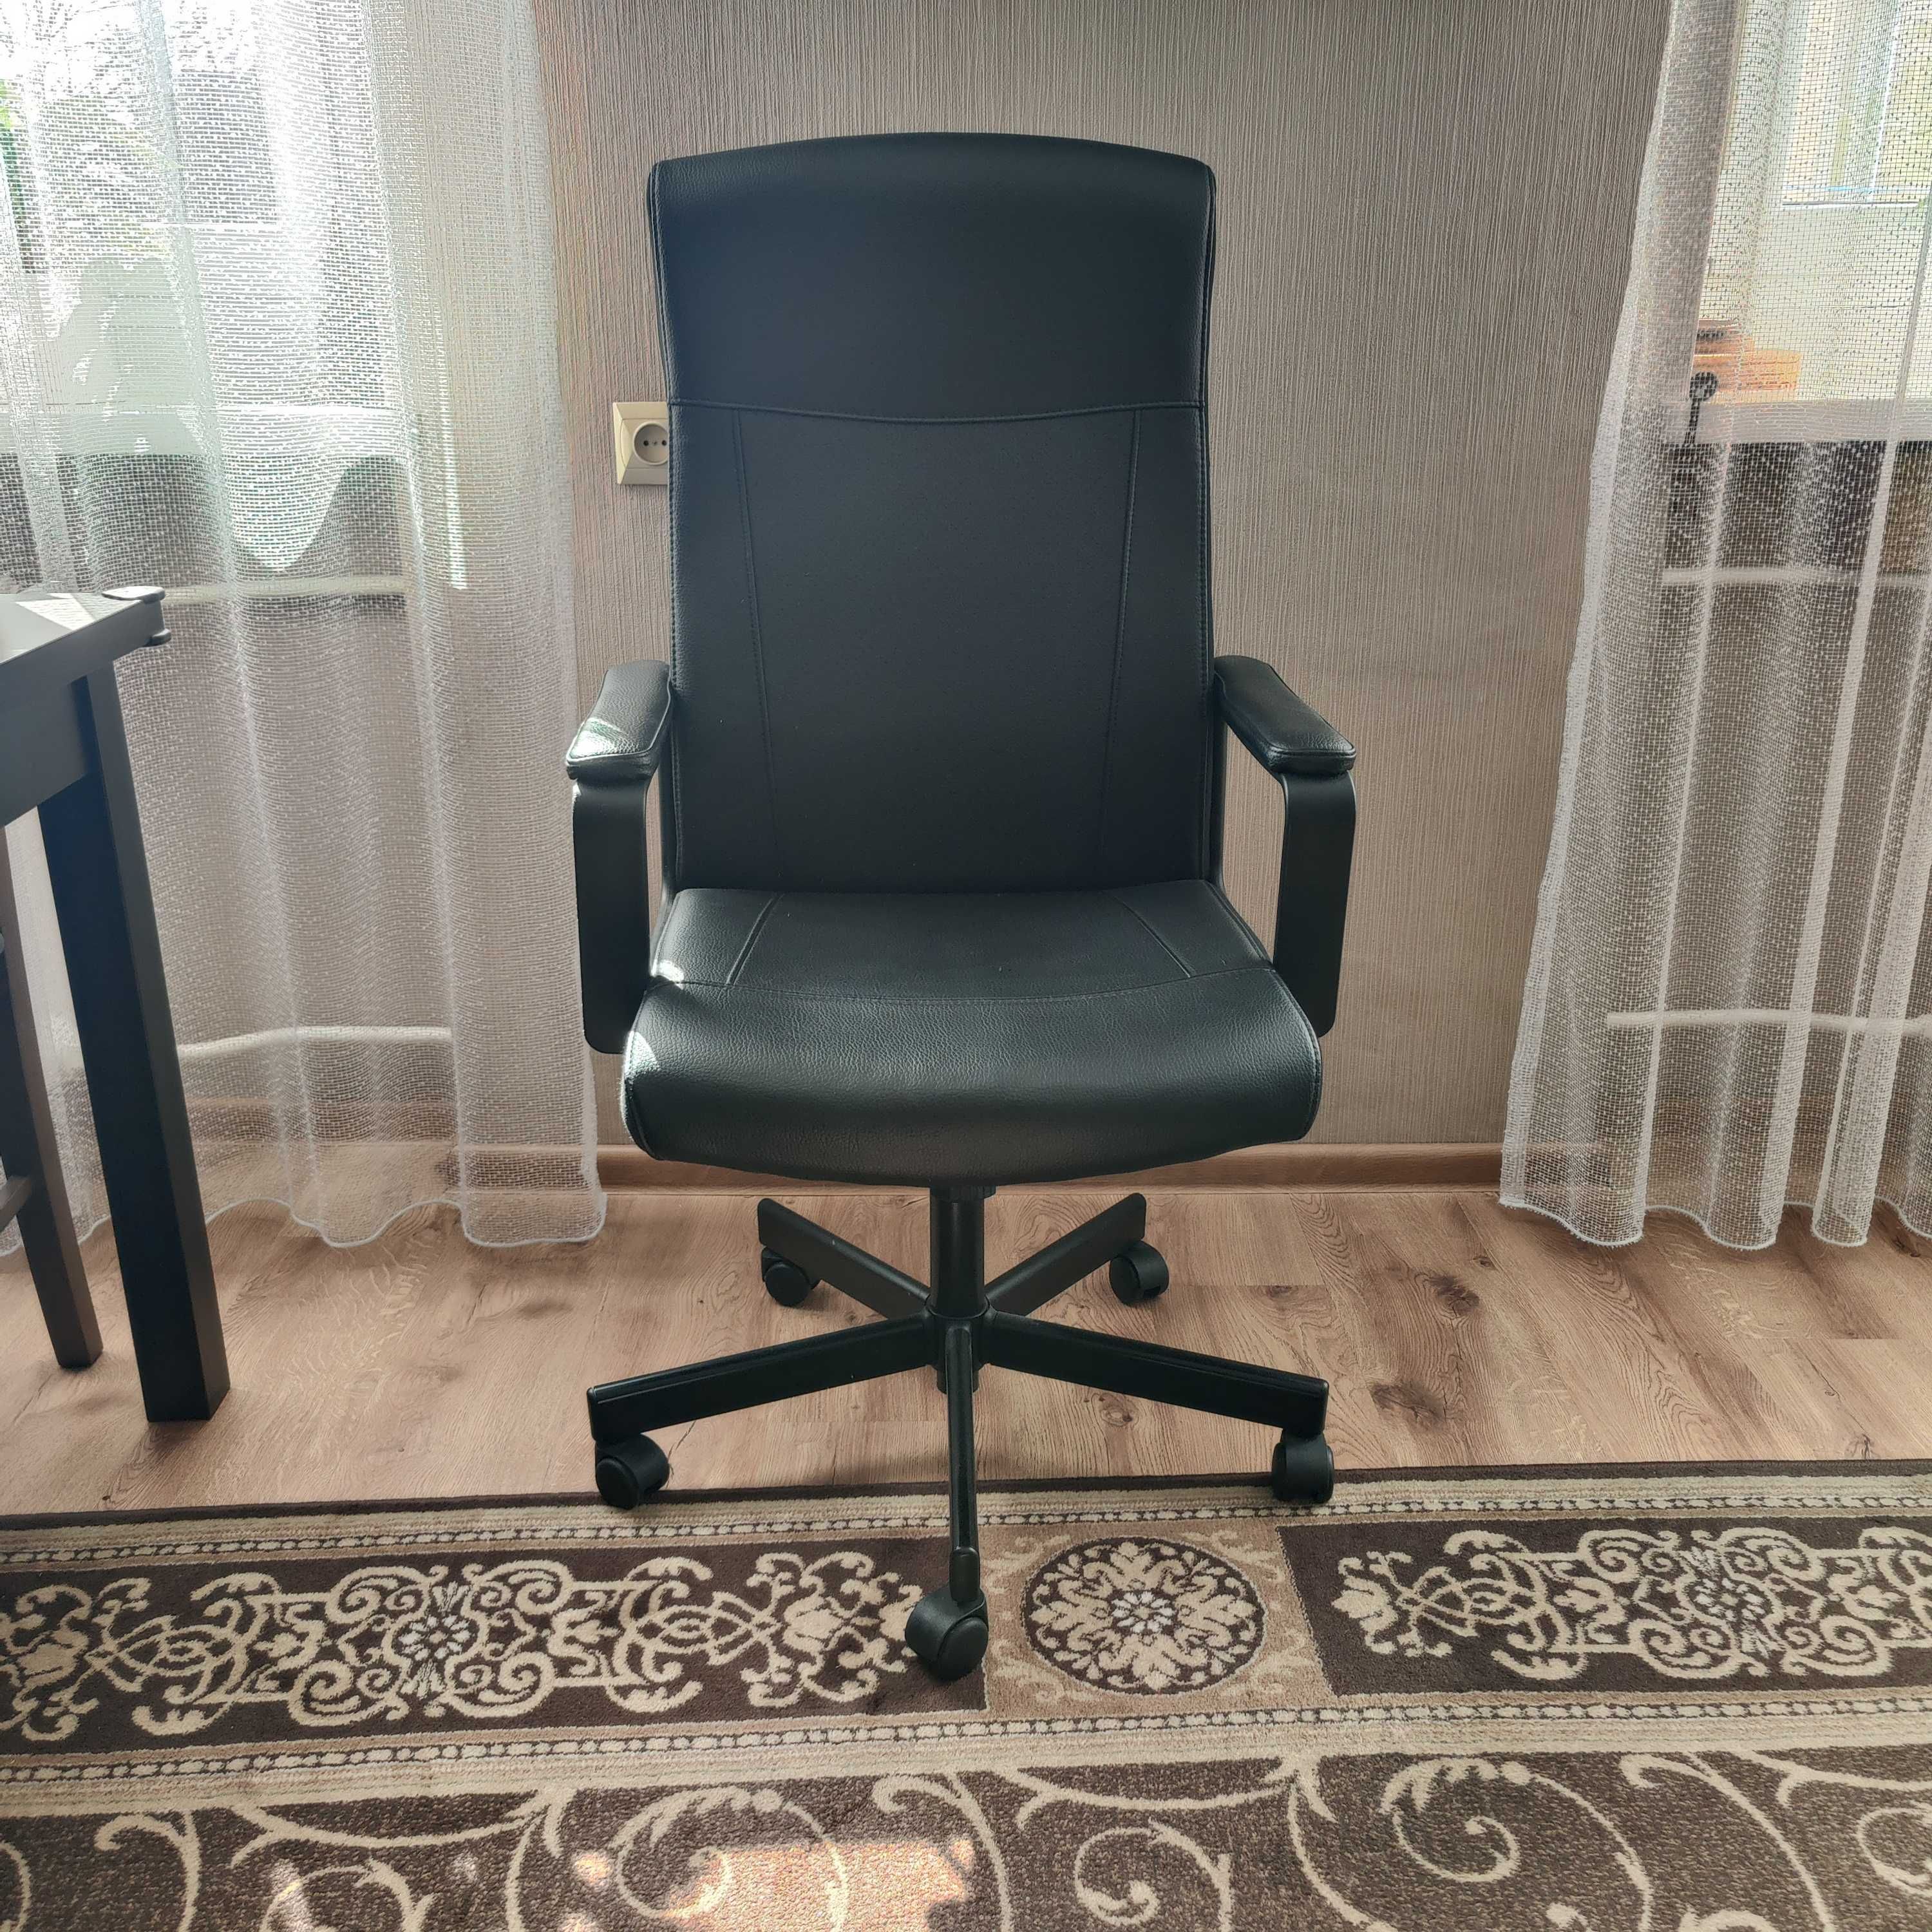 Krzesło obrotowe do biura